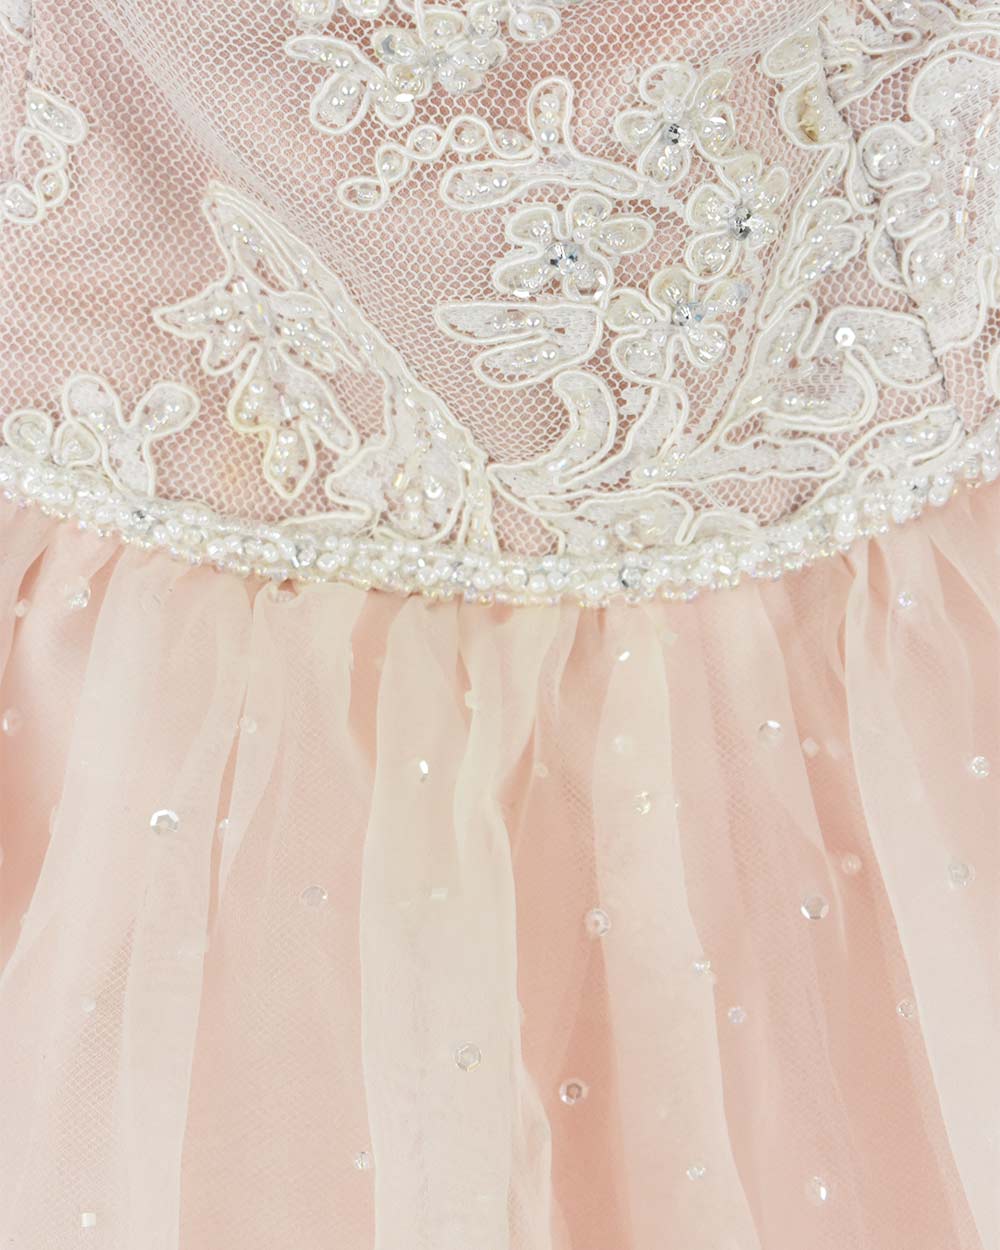 Mori Lee Pale Pink Princess Wedding Dress Size 12